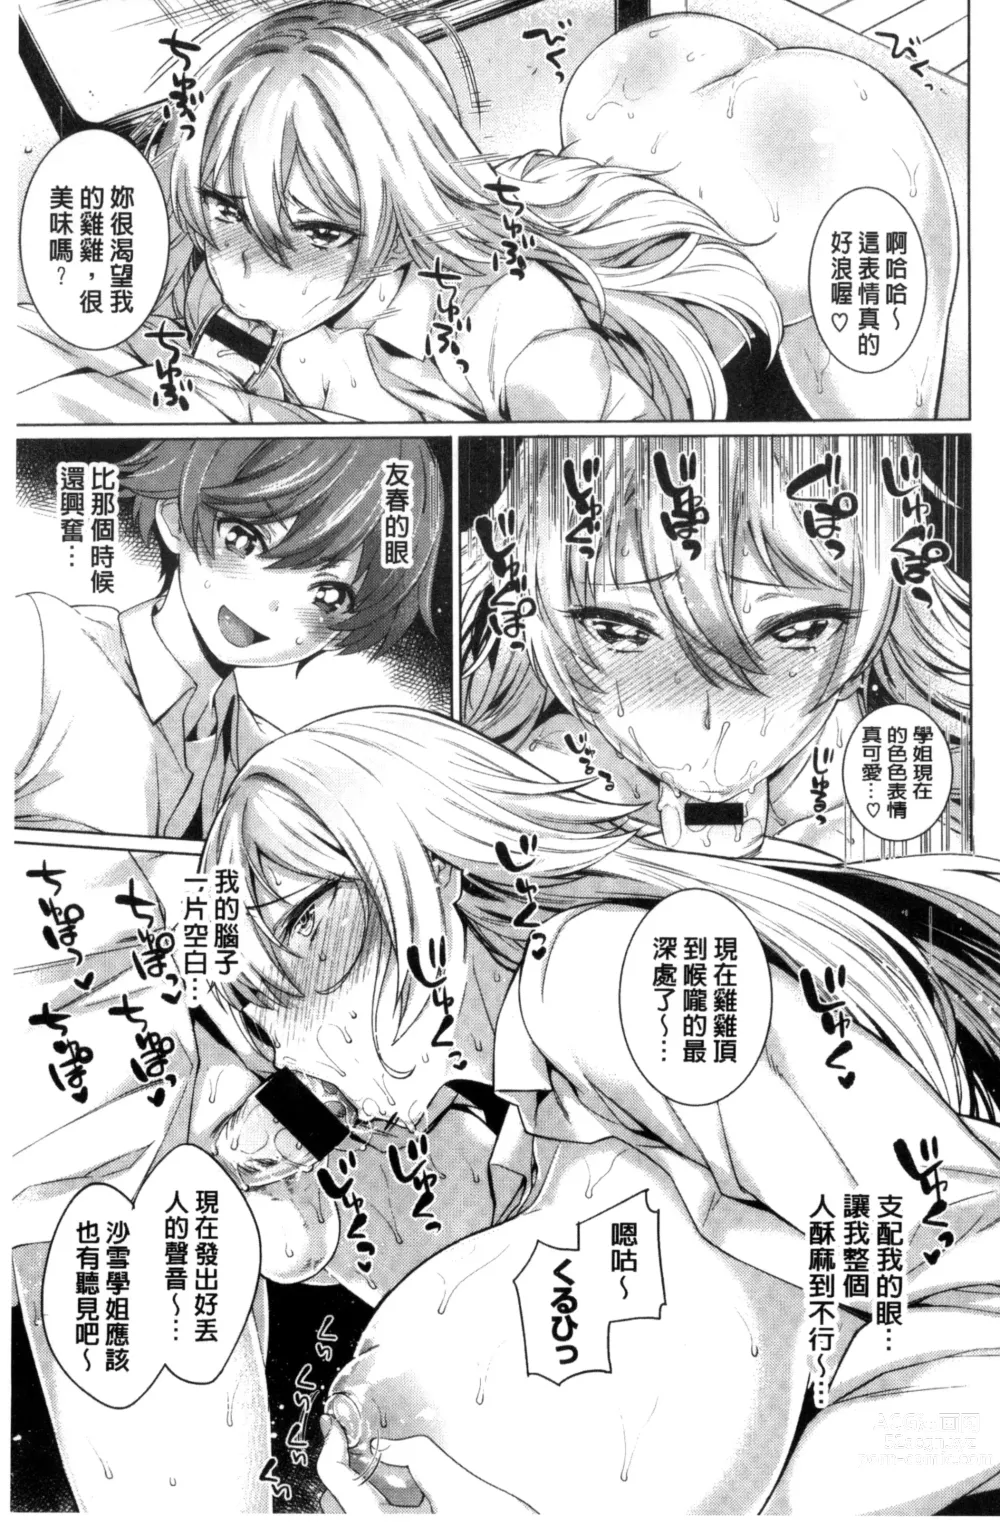 Page 201 of manga Zettai Muteki Shoujo - Cant beat me at sex!!